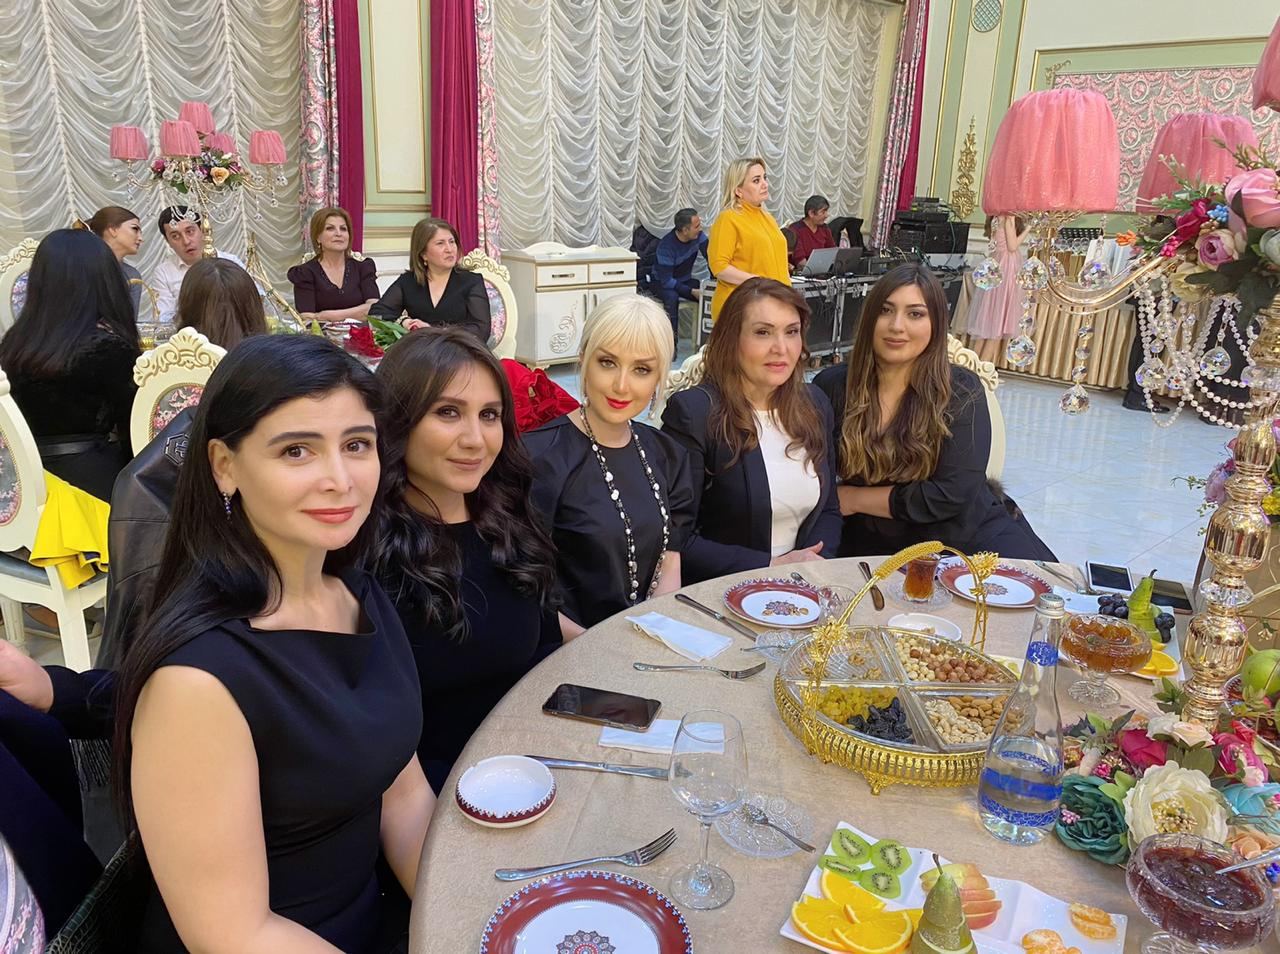 В Баку прошла церемония награждения национальной премии "Деловая женщина года" (ФОТО)